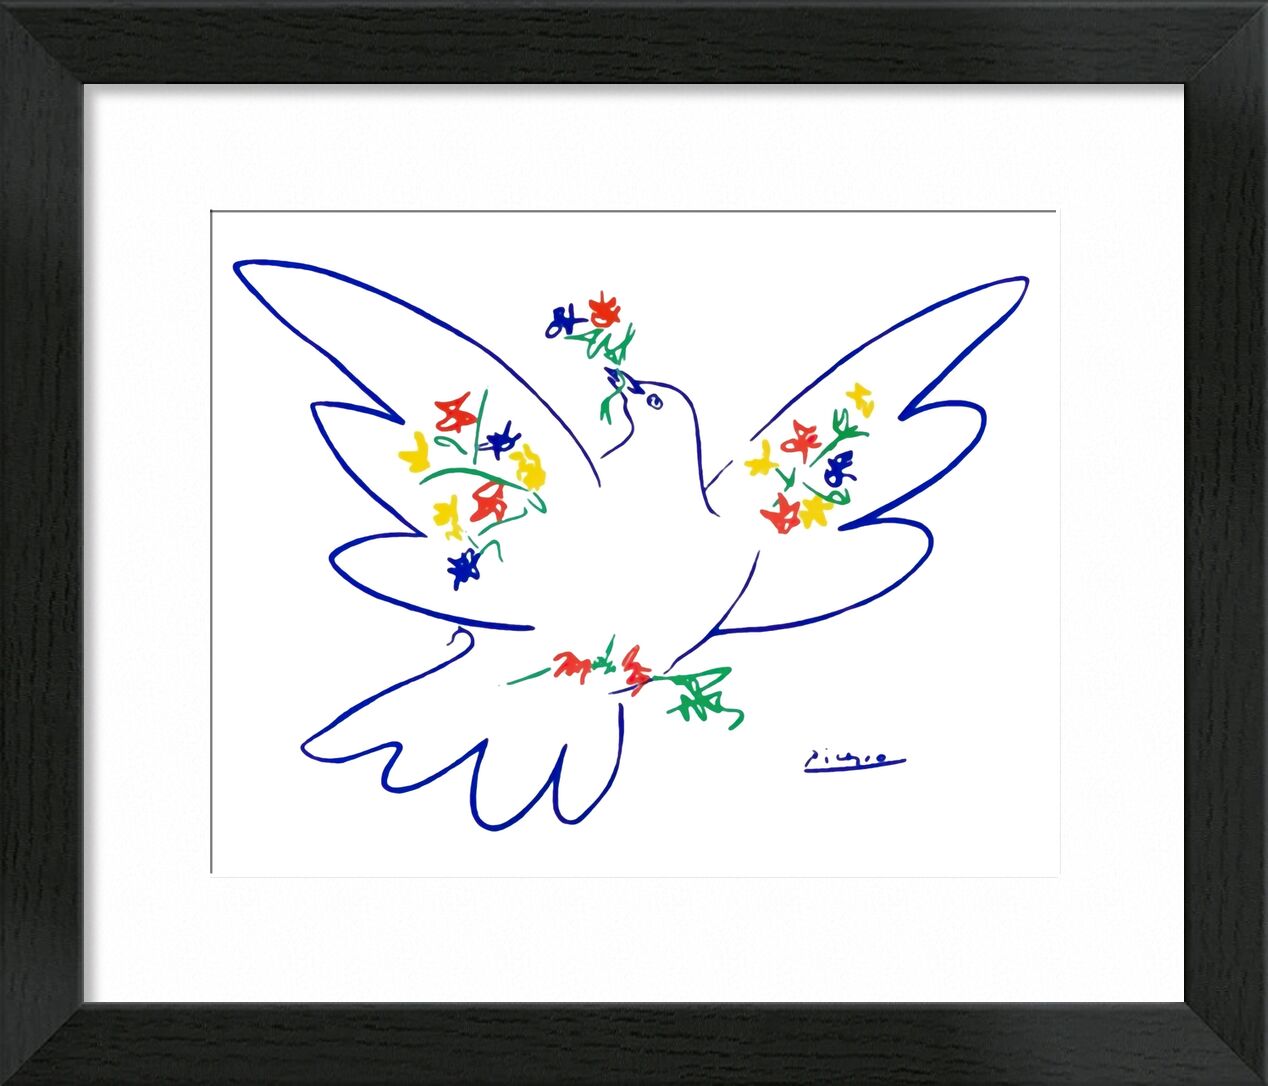 Dove of peace - PABLO PICASSO von Bildende Kunst, Prodi Art, PABLO PICASSO, Bleistiftzeichnung, Zeichnung, Liebe, Frieden, Taube